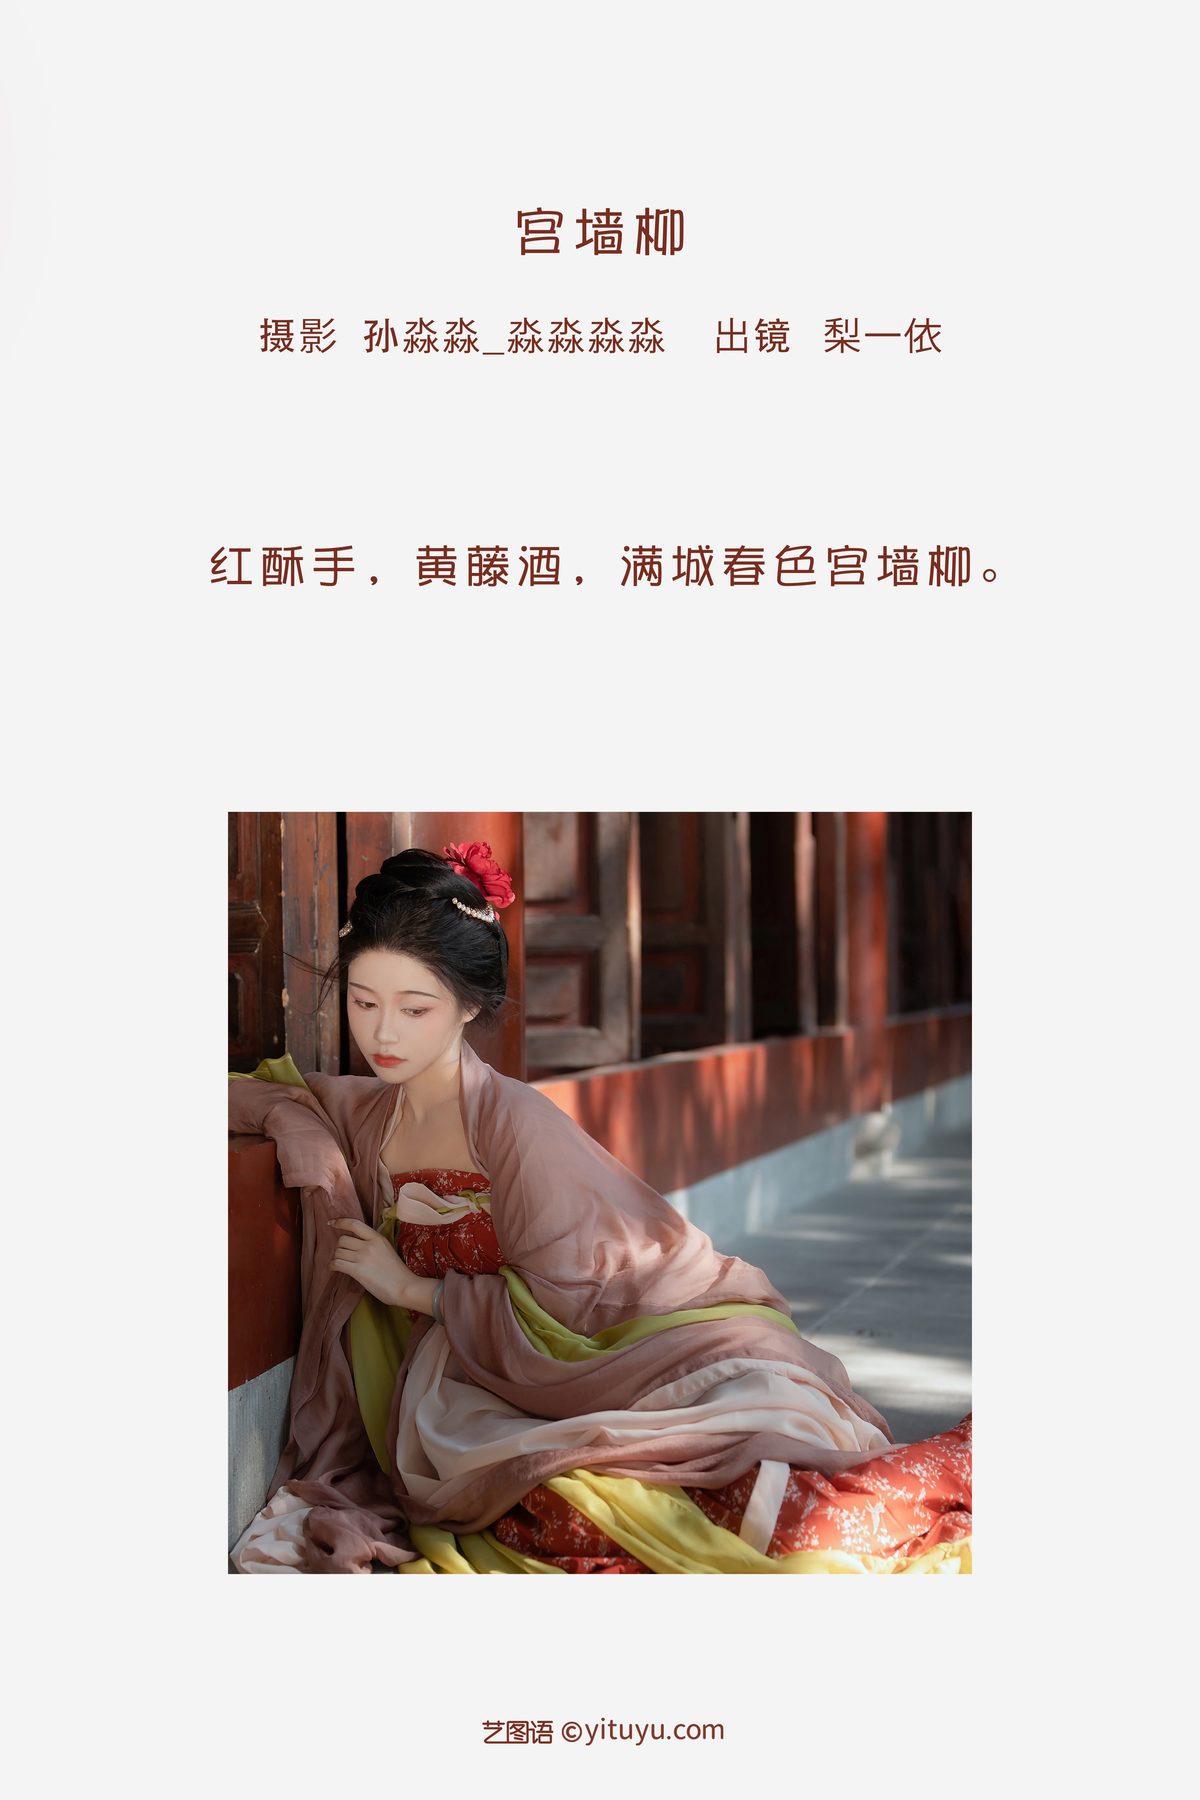 YiTuYu艺图语 Vol 3497 Li Yi Yi 0002 7079647490.jpg